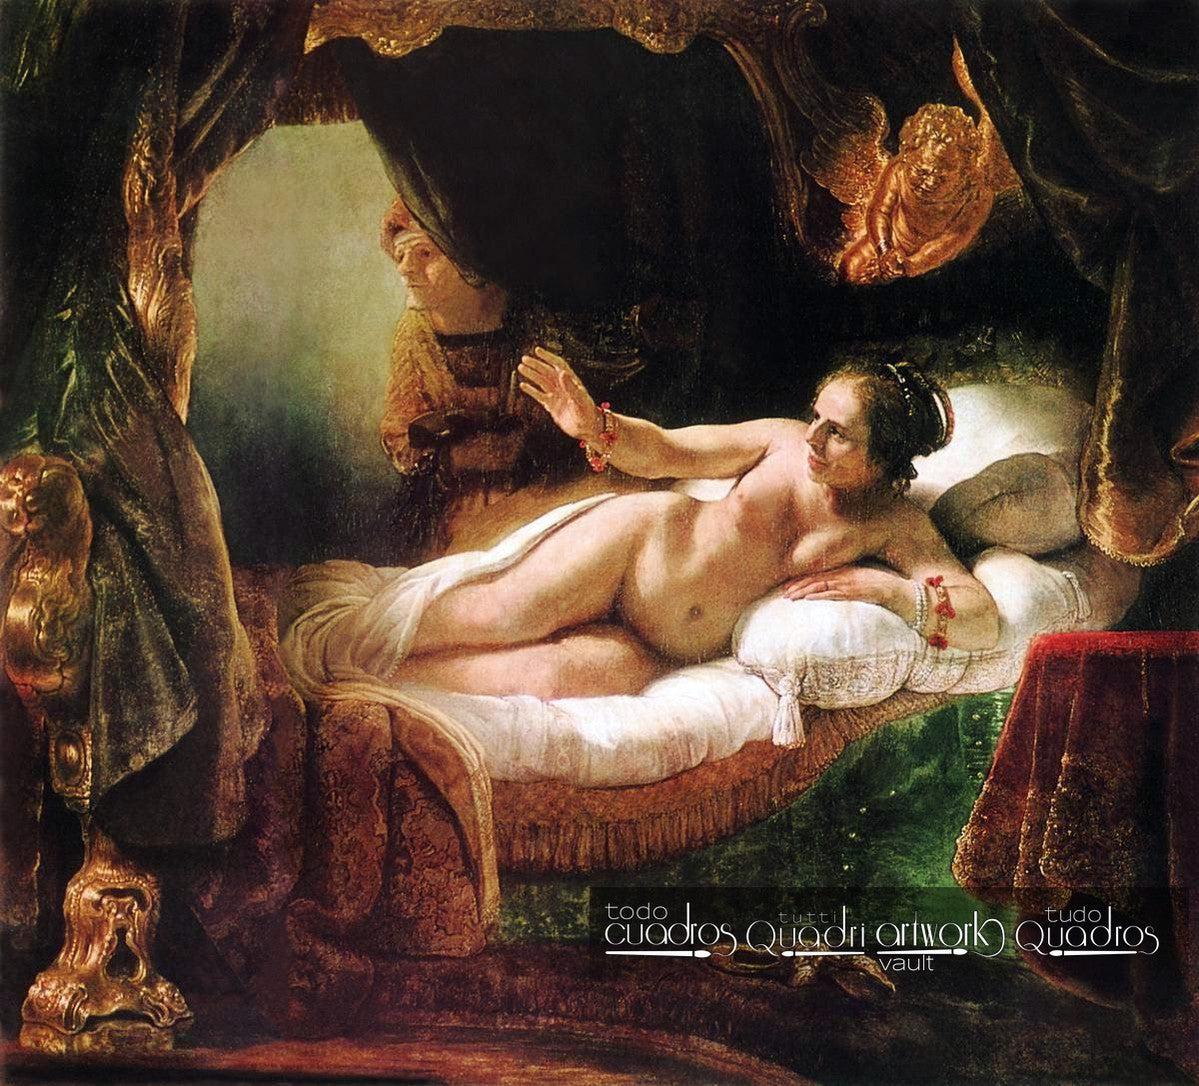 Danae, Rembrandt